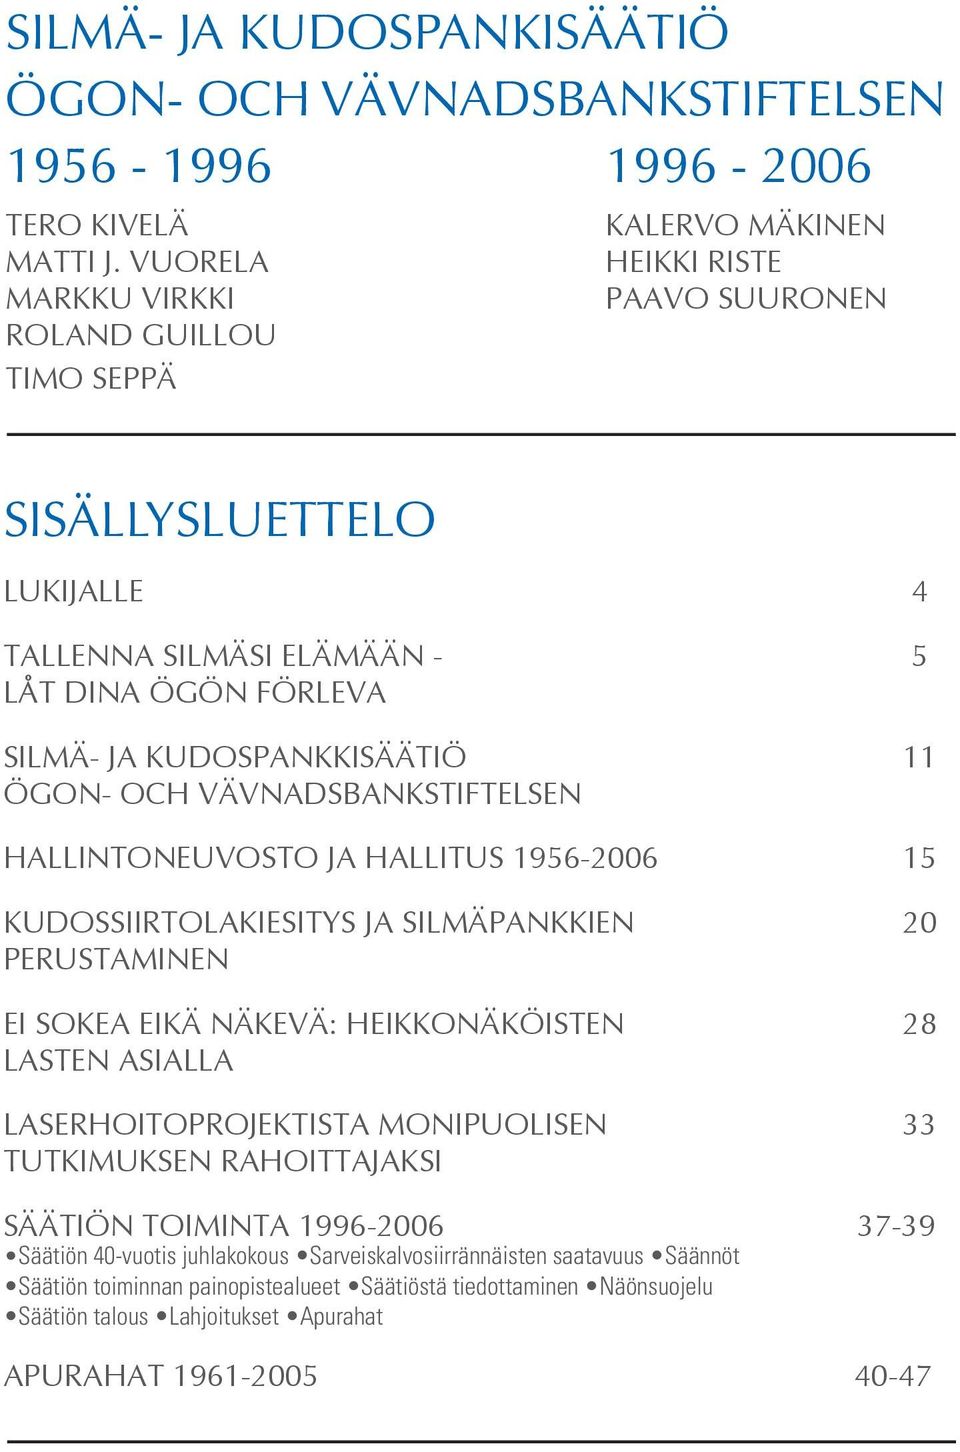 KUDOSPANKKISÄÄTIÖ 11 ÖGON- OCH VÄVNADSBANKSTIFTELSEN HALLINTONEUVOSTO JA HALLITUS 1956-2006 15 KUDOSSIIRTOLAKIESITYS JA SILMÄPANKKIEN 20 PERUSTAMINEN EI SOKEA EIKÄ NÄKEVÄ: HEIKKONÄKÖISTEN 28 LASTEN